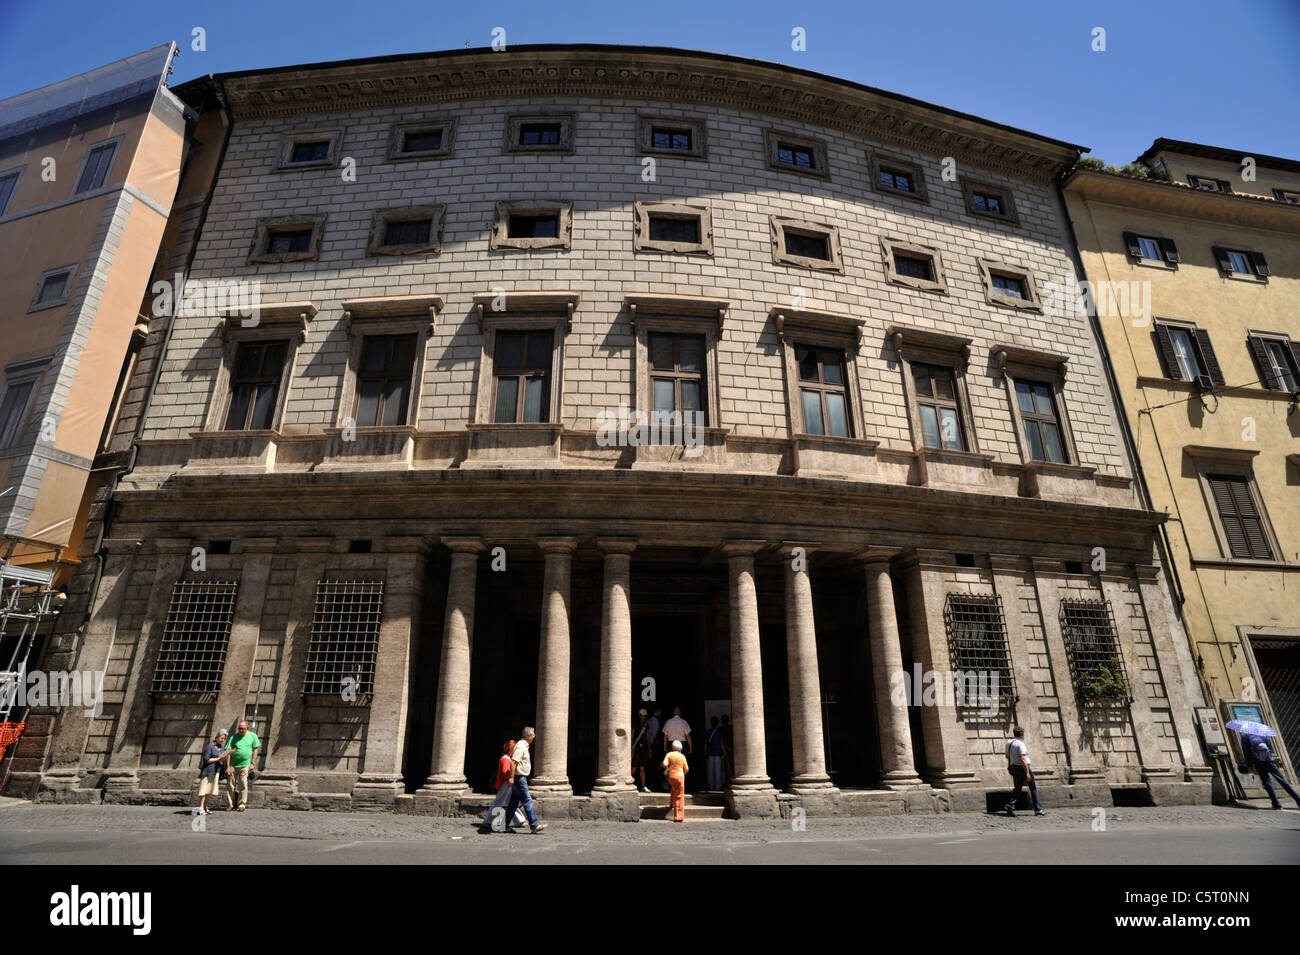 Italie, Rome, Palazzo Massimo alle colonne, palais de la Renaissance Banque D'Images